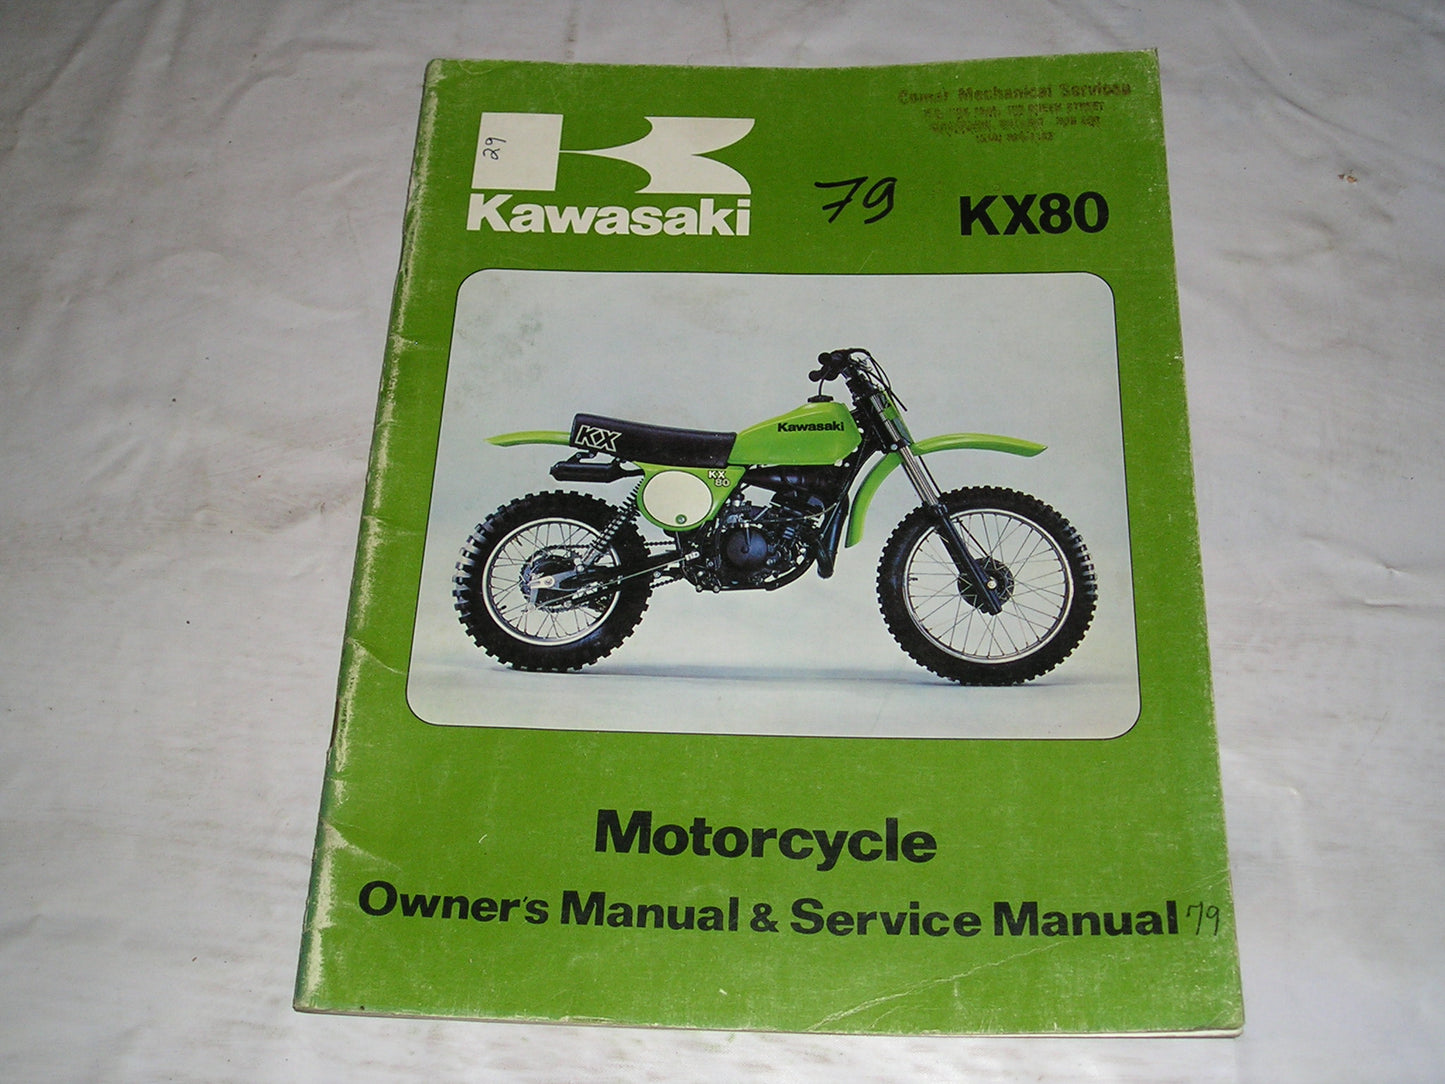 KAWASAKI KX80 A1 1979  Owner's & Service Manual  99920-1038-01  #29